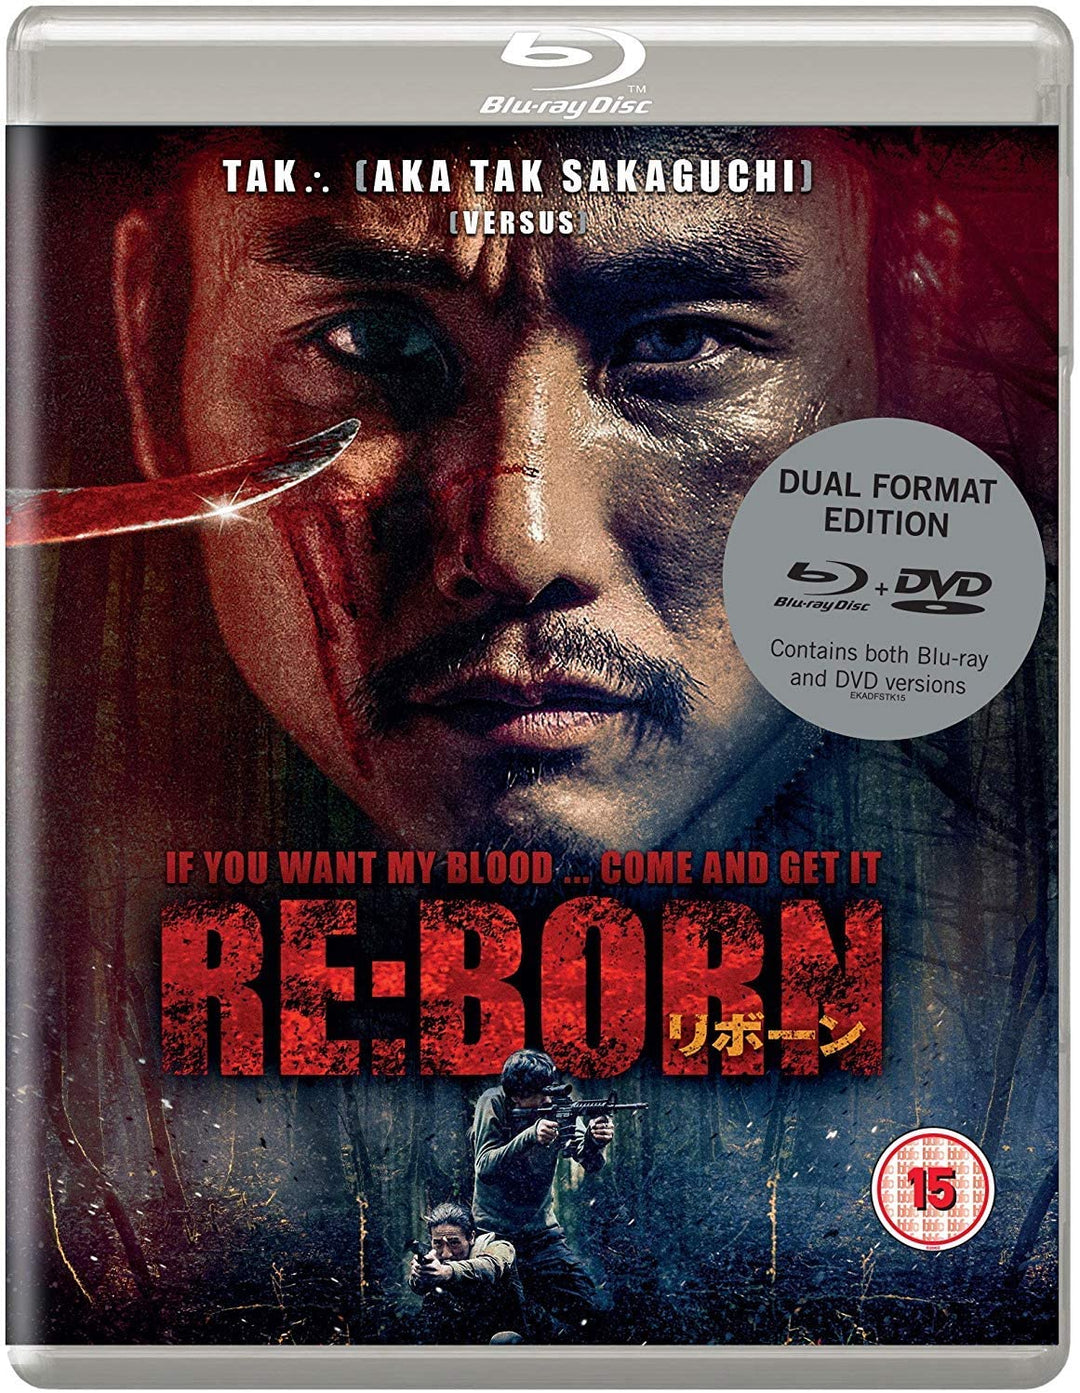 REBORN Dual Format - Action/Drama [Blu-ray]